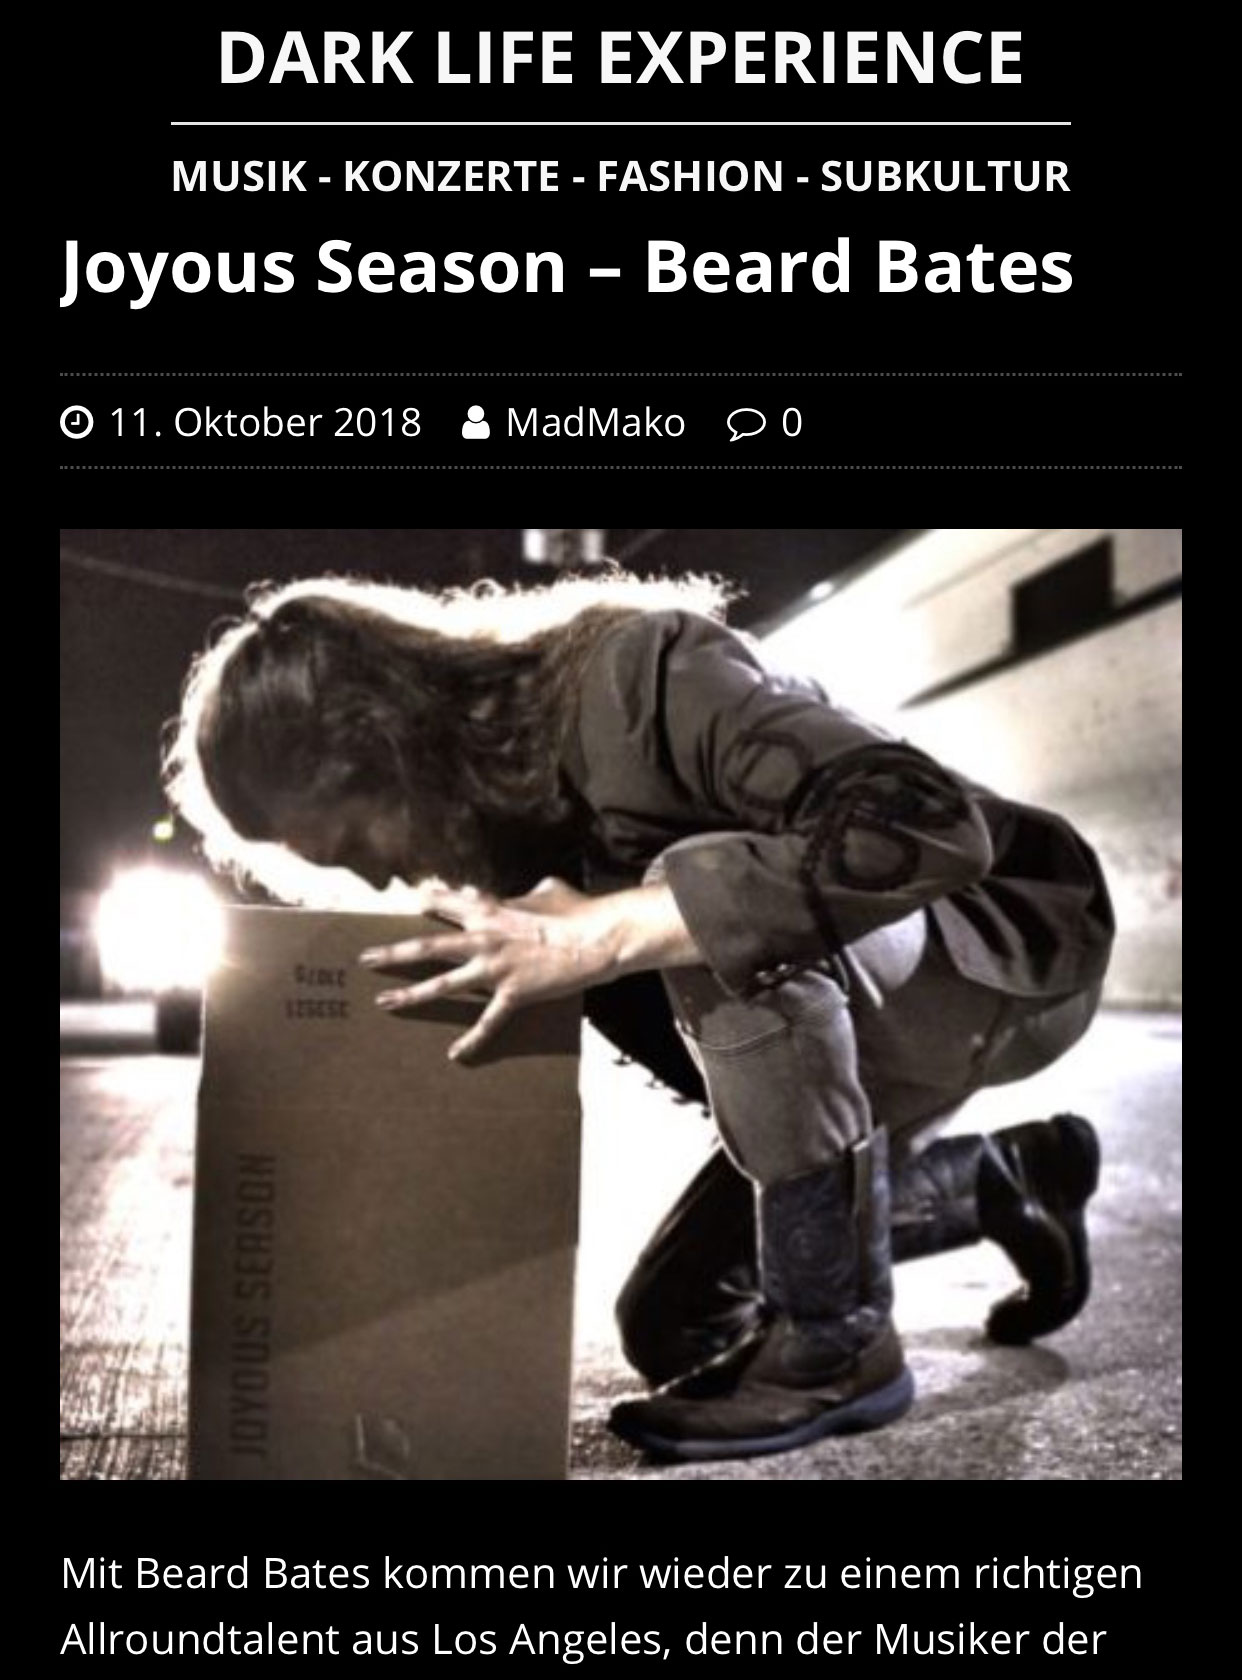 BEARD-BATES - DARK-LIFE-EXPERIENCE - Joyous Season